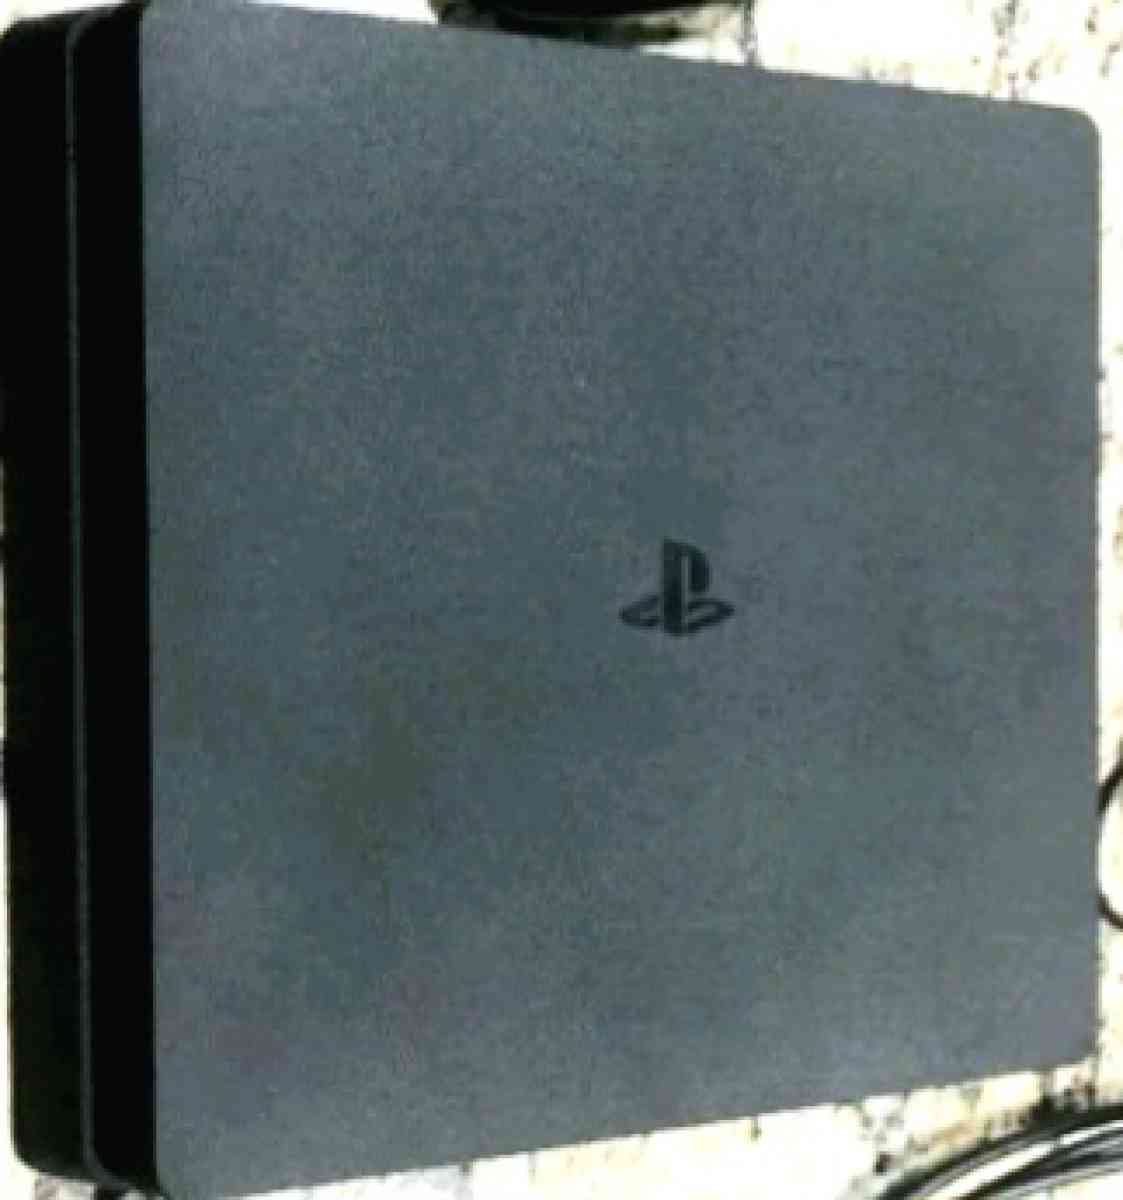 Sony PS4 Slim 1 Terabyte